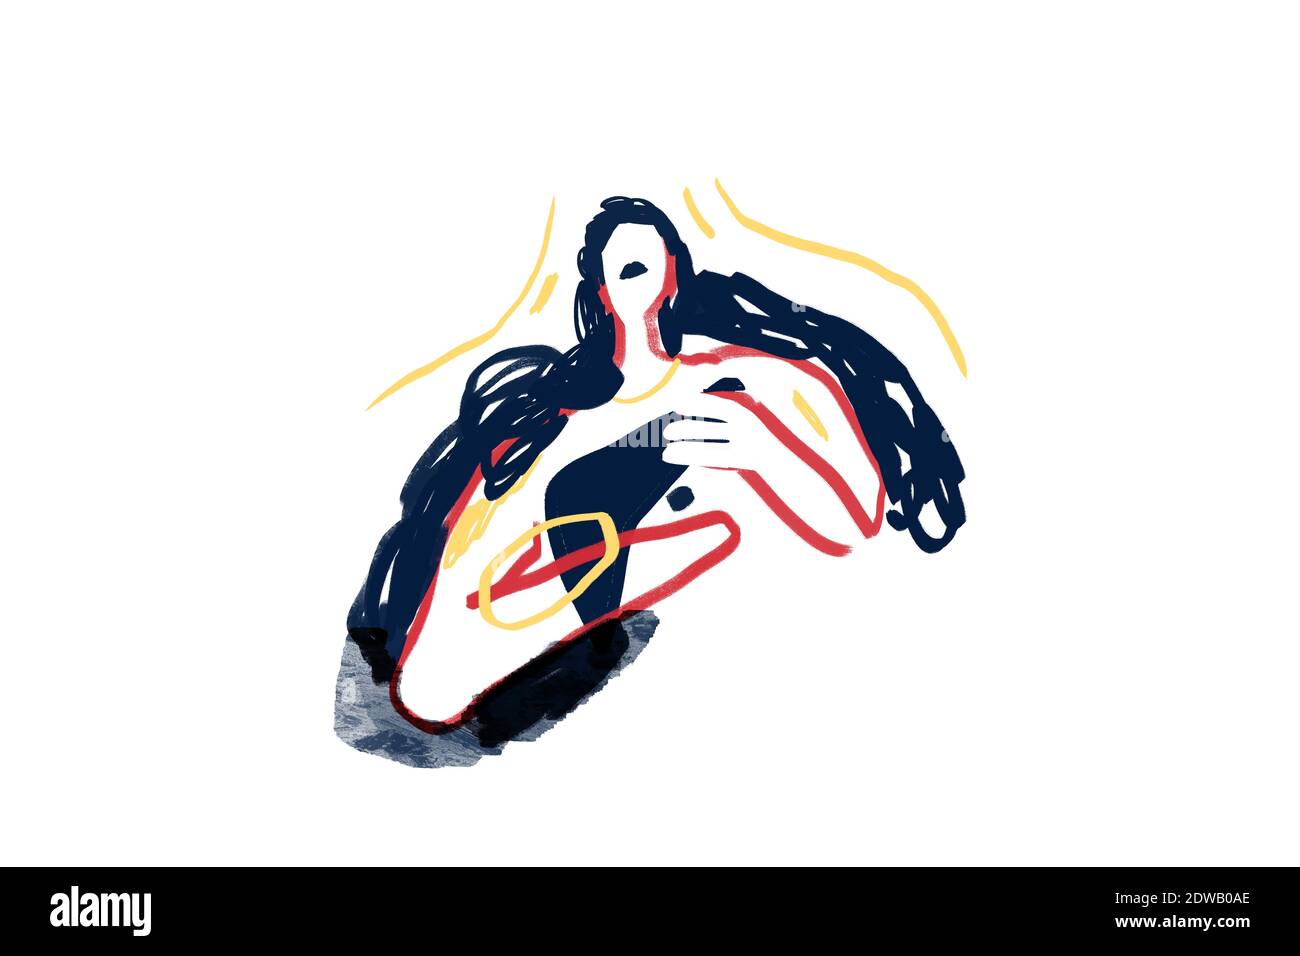 Personnes abstraites colorées, expressionnisme et style d'art Keith Haring. Femme aux formes. Peinture dessin avec ligne de couleur et isolé sur blanc, pour pri Banque D'Images